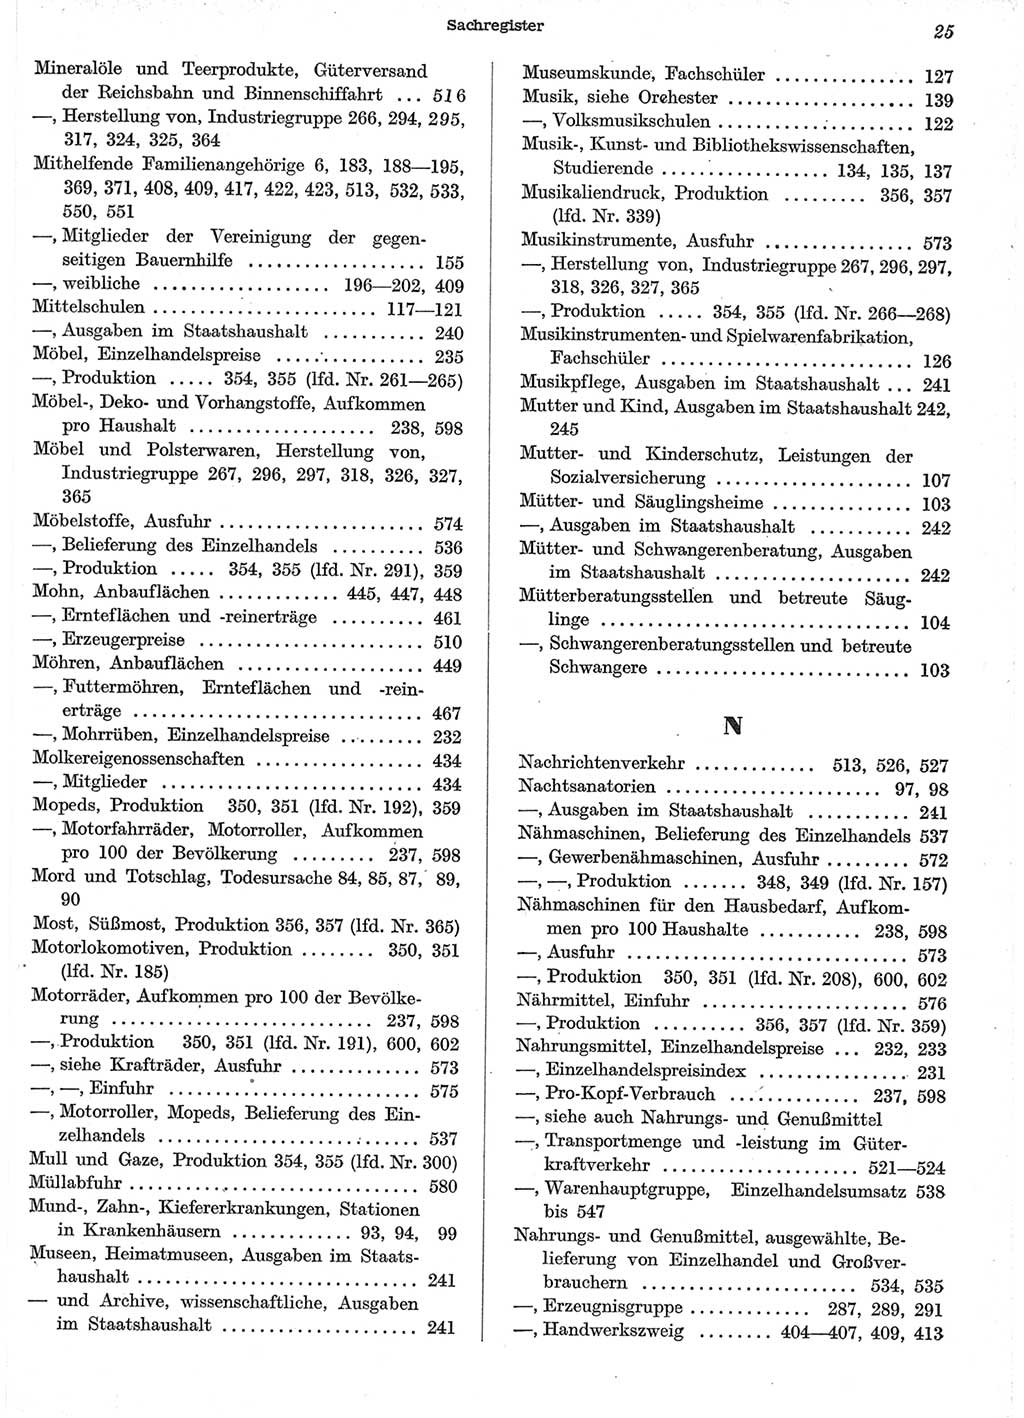 Statistisches Jahrbuch der Deutschen Demokratischen Republik (DDR) 1958, Seite 25 (Stat. Jb. DDR 1958, S. 25)